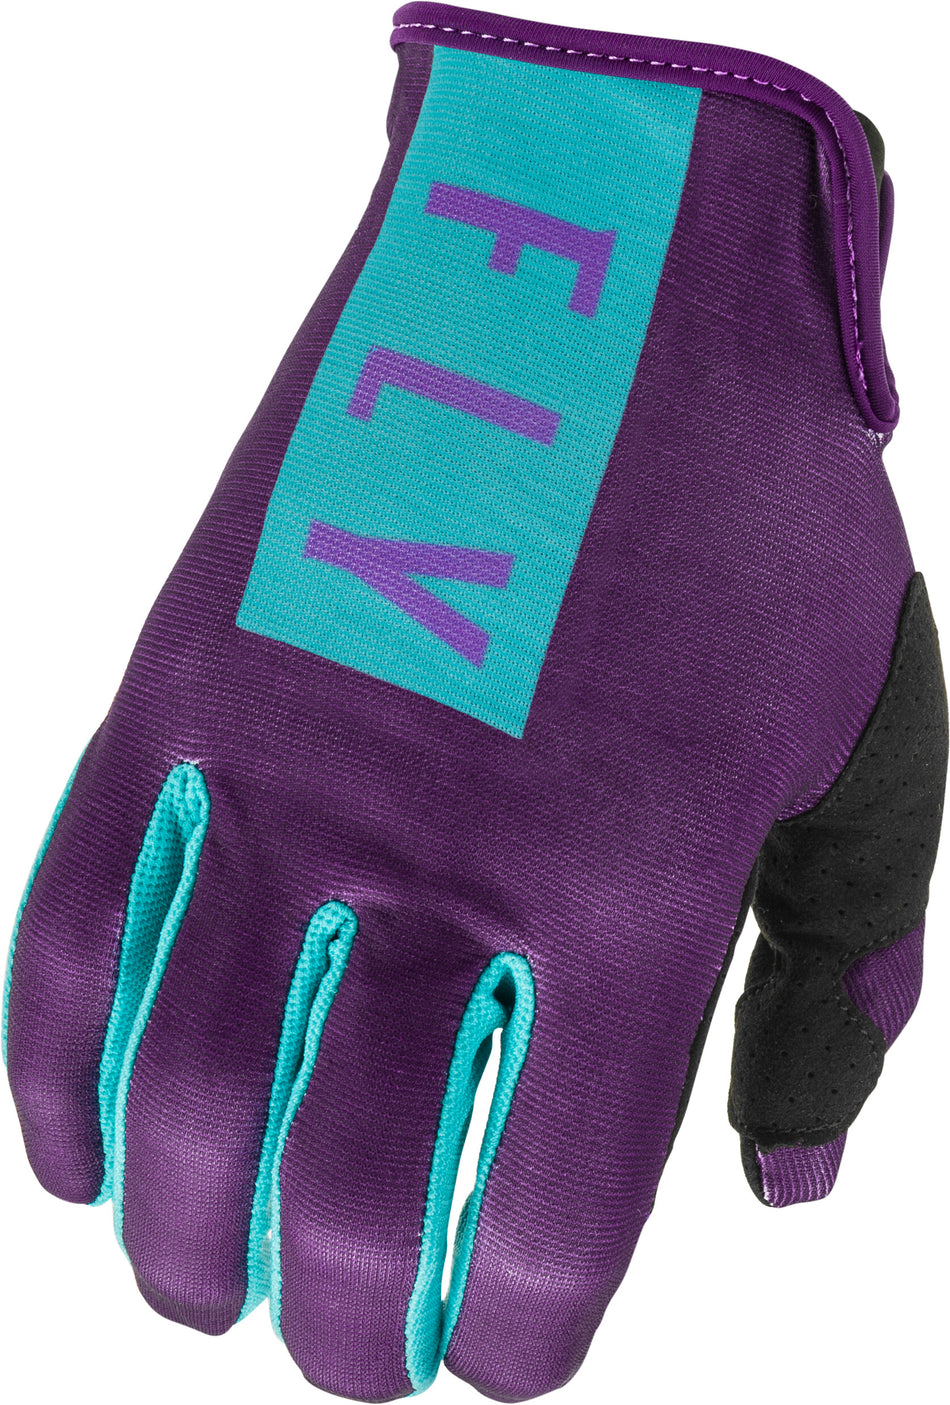 FLY RACING Women's Lite Gloves Purple/Blue Sz 07 374-61807